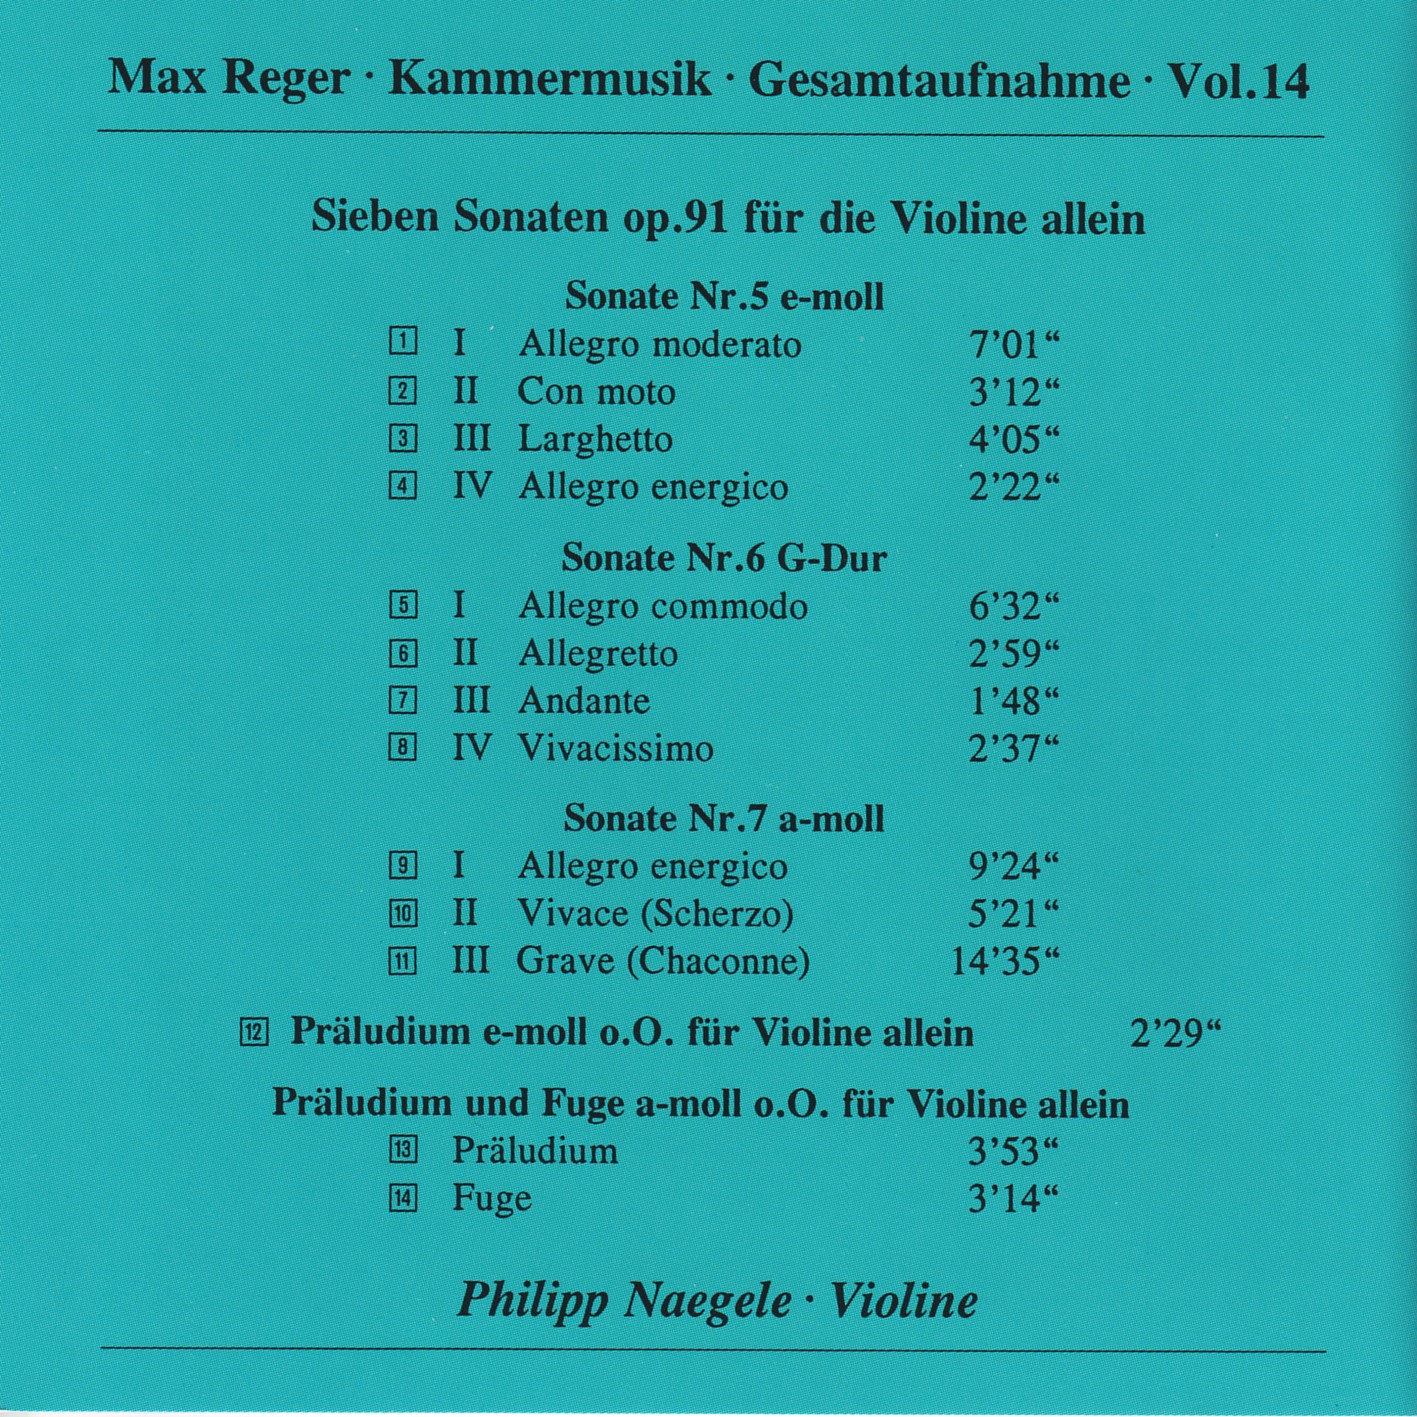 Max Reger - Kammermusik komplett Vol. 14